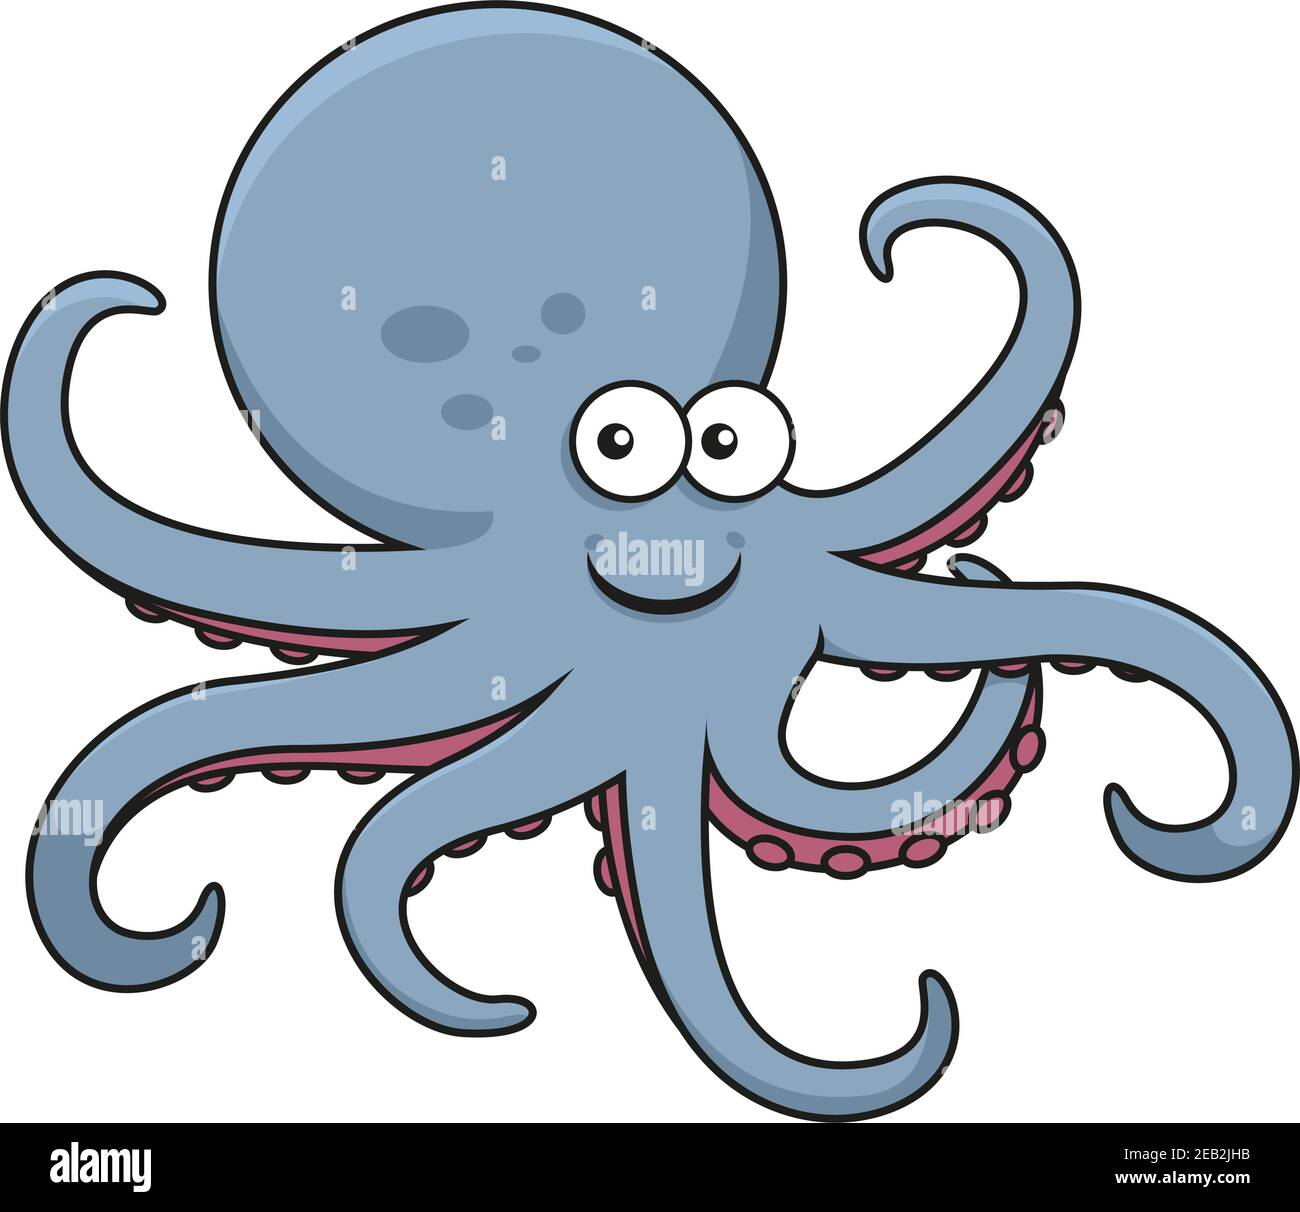 Personaggio cartoon polpo blu con testa rotonda grande e tentacoli curvi con ventose rosa, per fauna selvatica subacquea o design mascotte Illustrazione Vettoriale